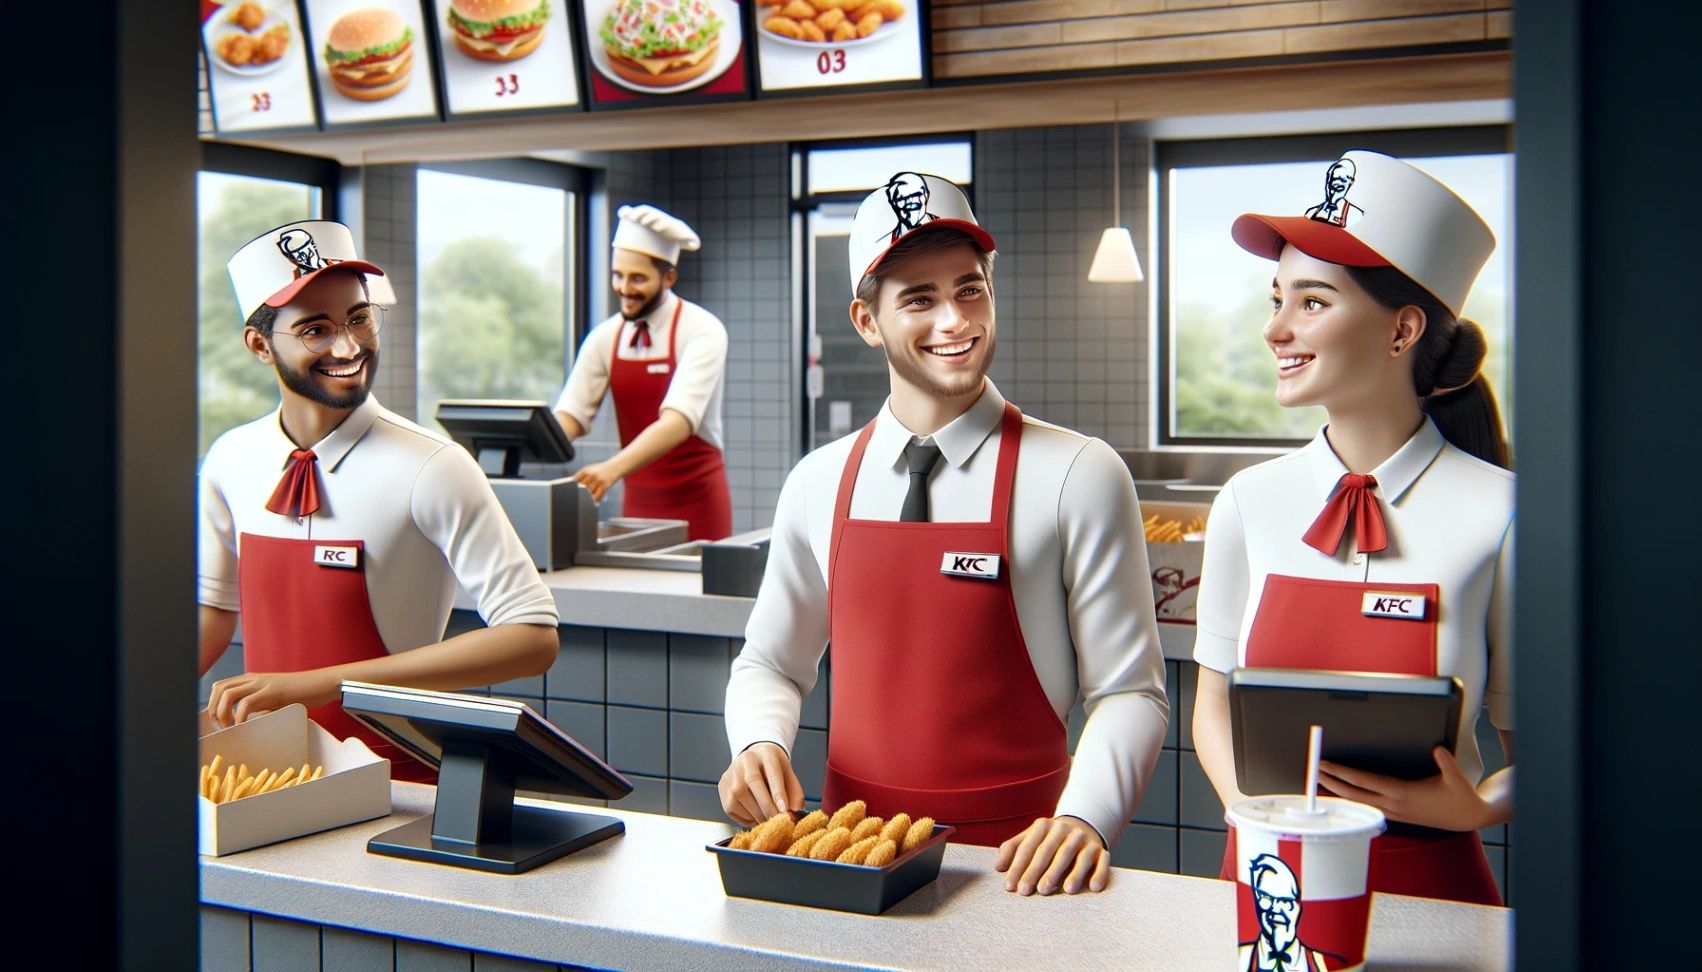 Offerte di lavoro KFC: Guida passo-passo per fare domanda online